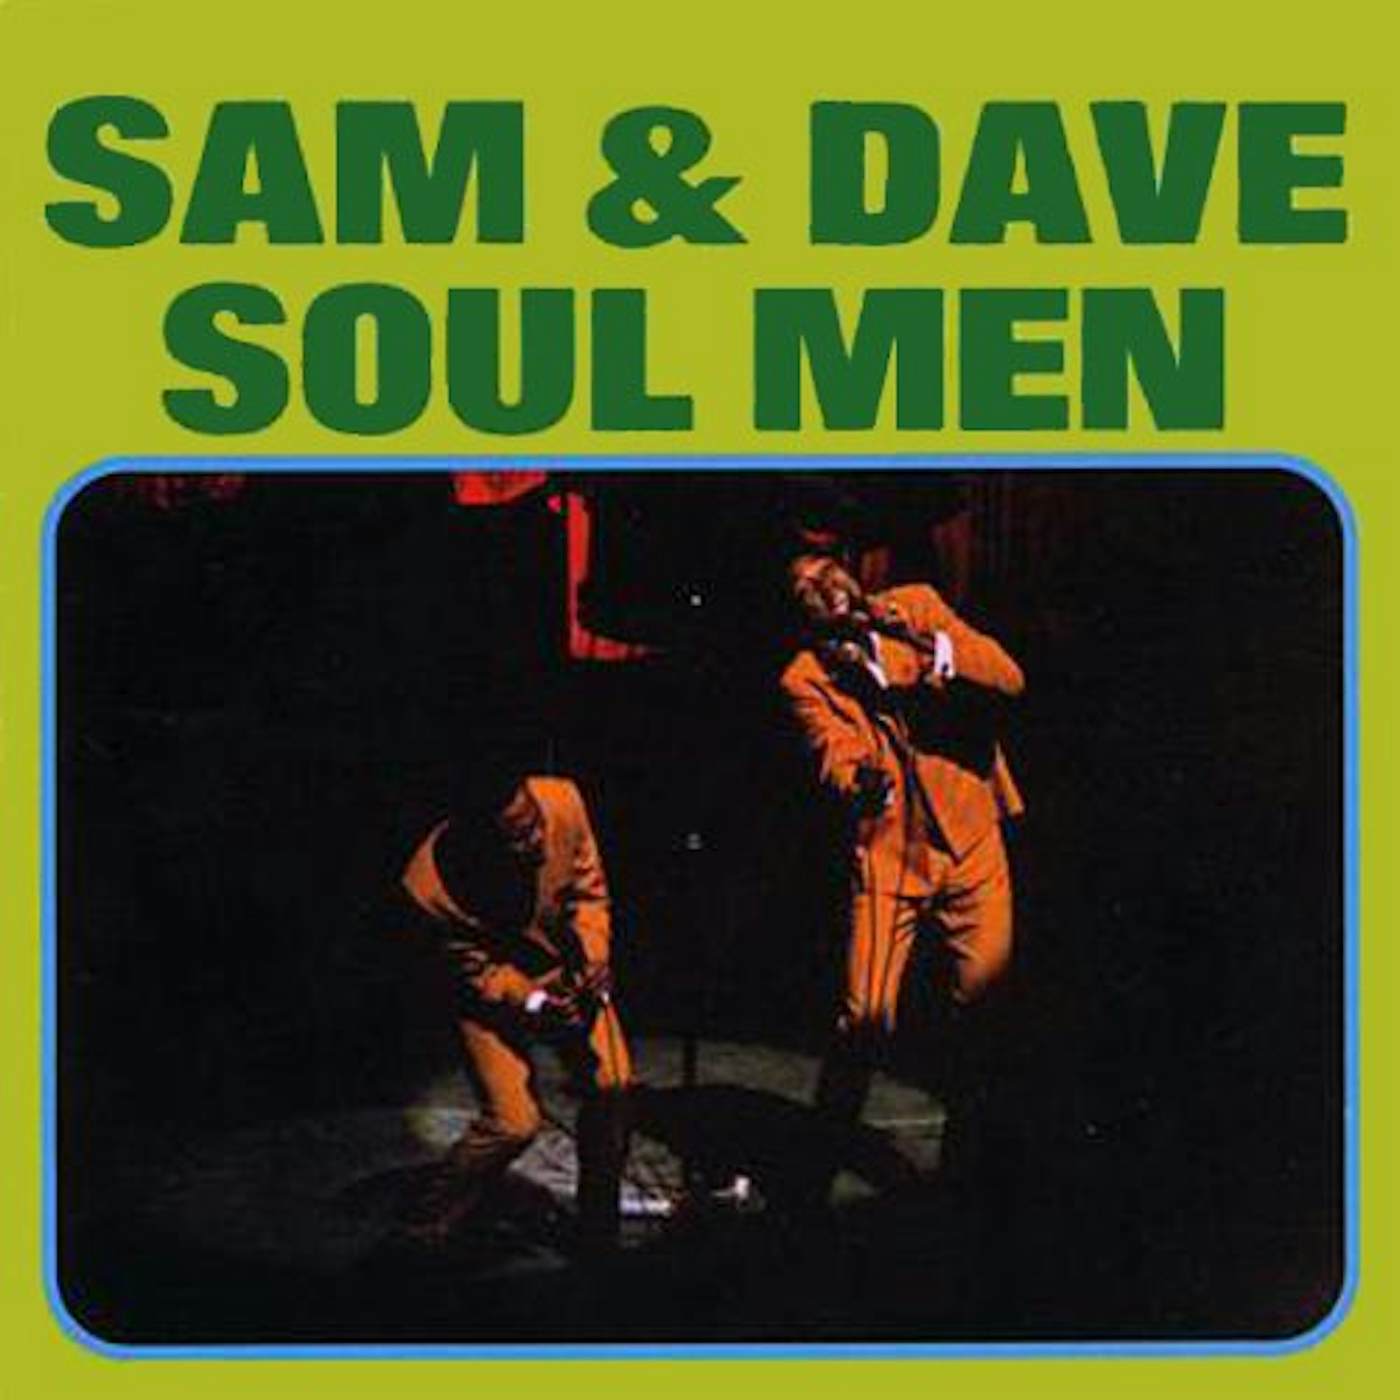 Sam & Dave Soul Men Vinyl Record